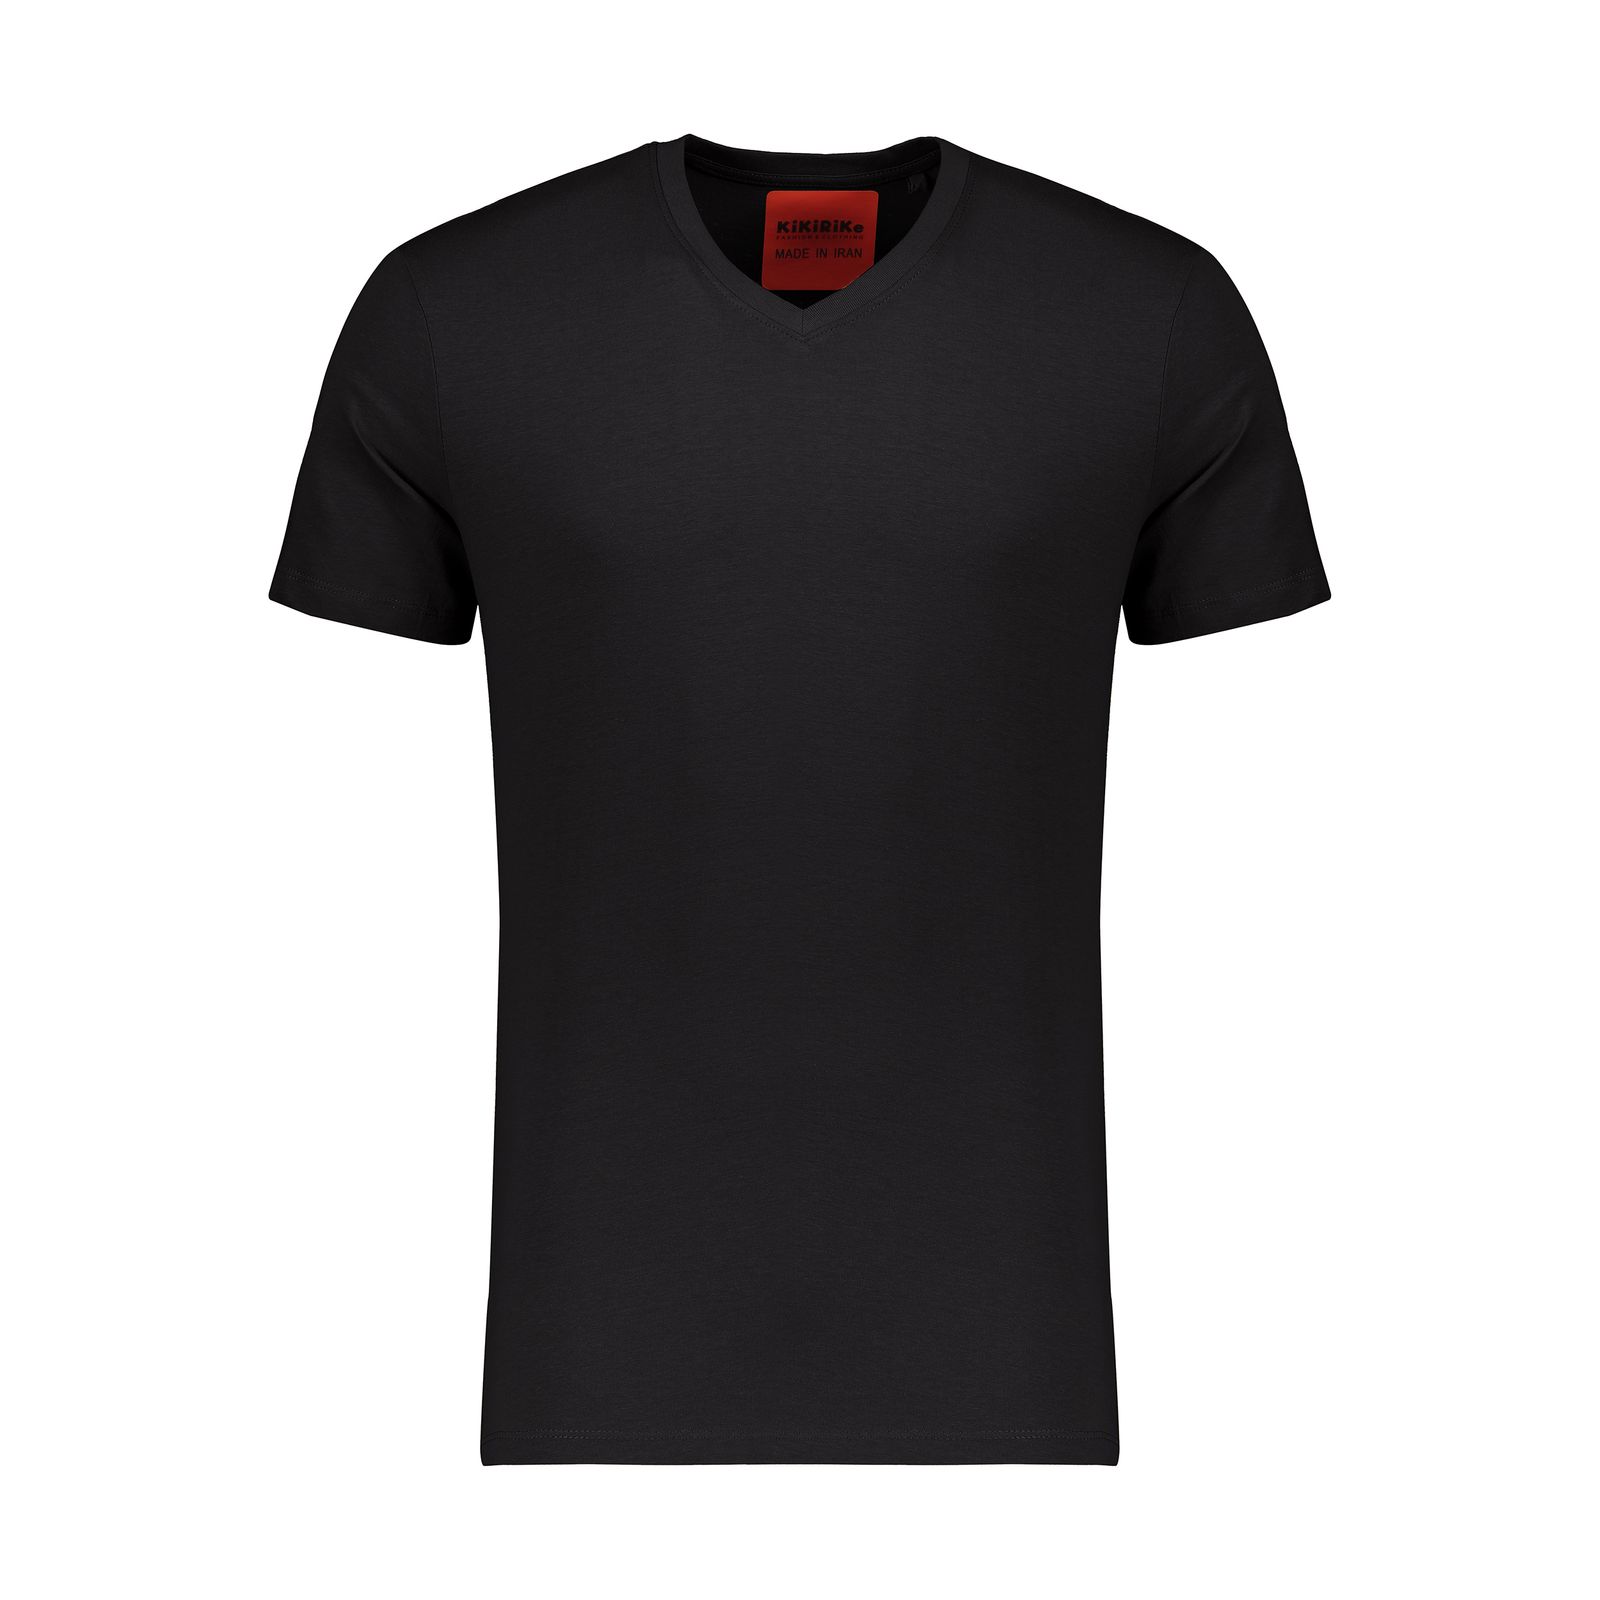 تی شرت مردانه کیکی رایکی مدل MBB02989-001 -  - 1